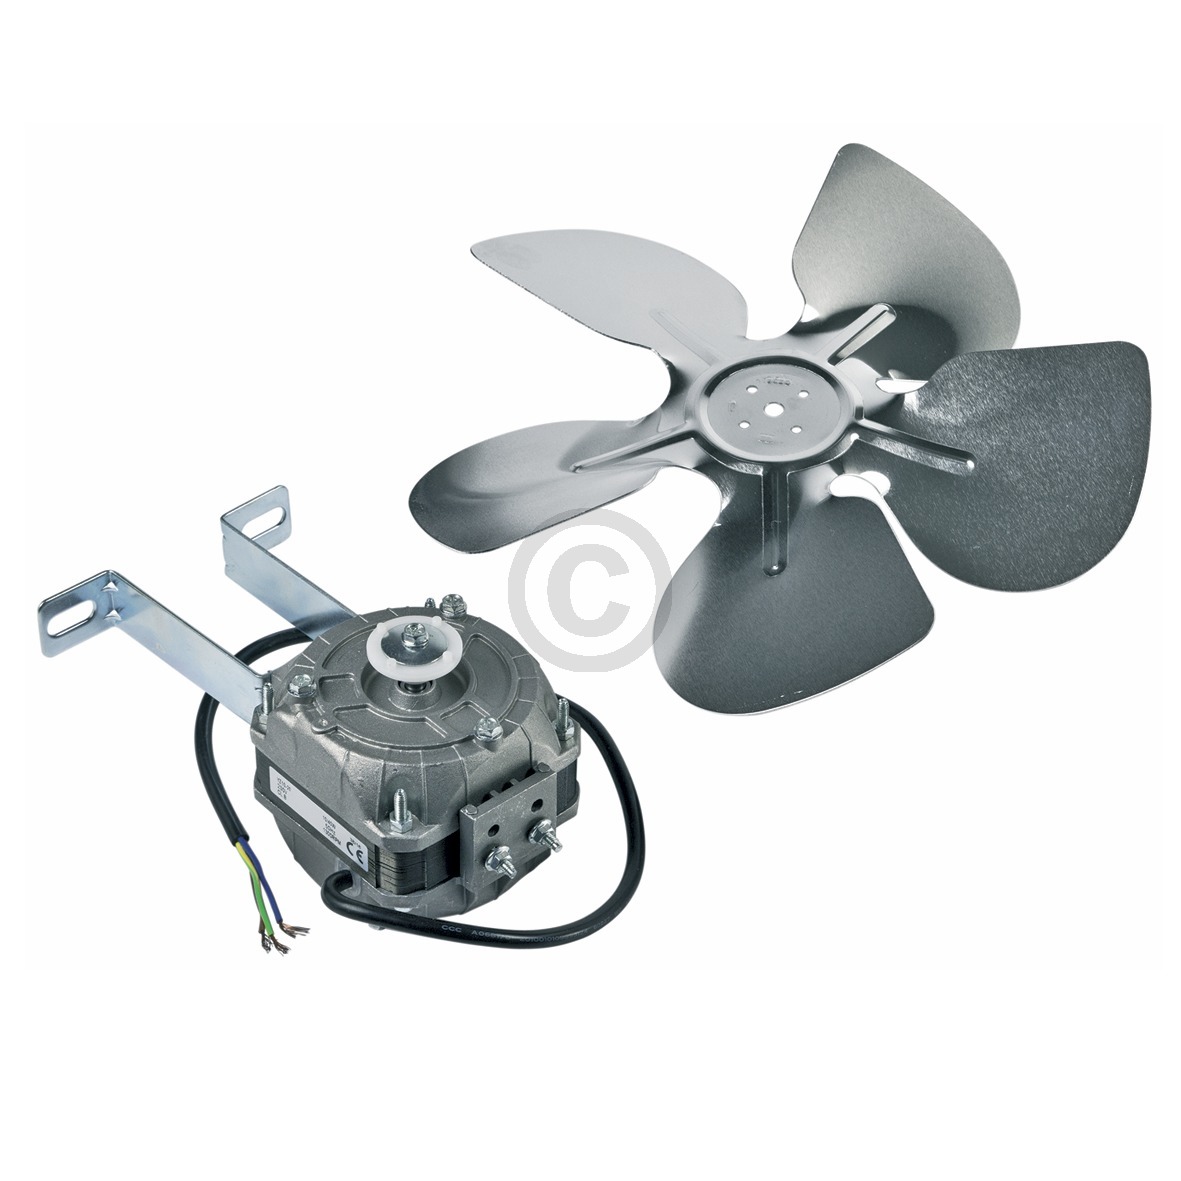 Ventilator Universal 10 Watt 230 Volt mit Haltebügel Flügel für Kühlschrank